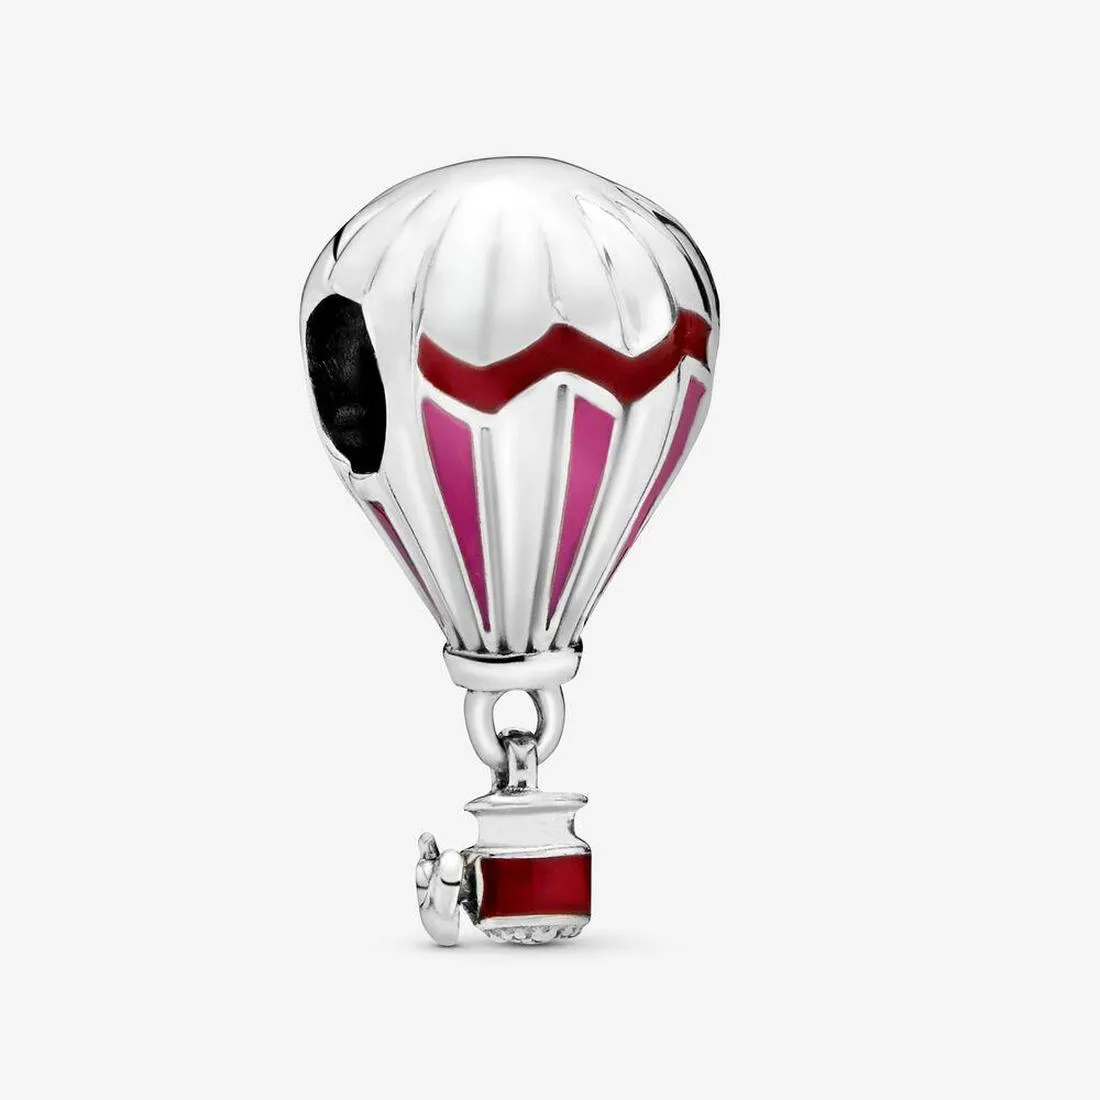 Authentische 925-Silber-Perlen-Armbänder, roter Heißluftballon-Reise-Charm, Schiebeperlen-Charms, passend für europäische Schmuckarmbänder im Pandora-Stil, Murano